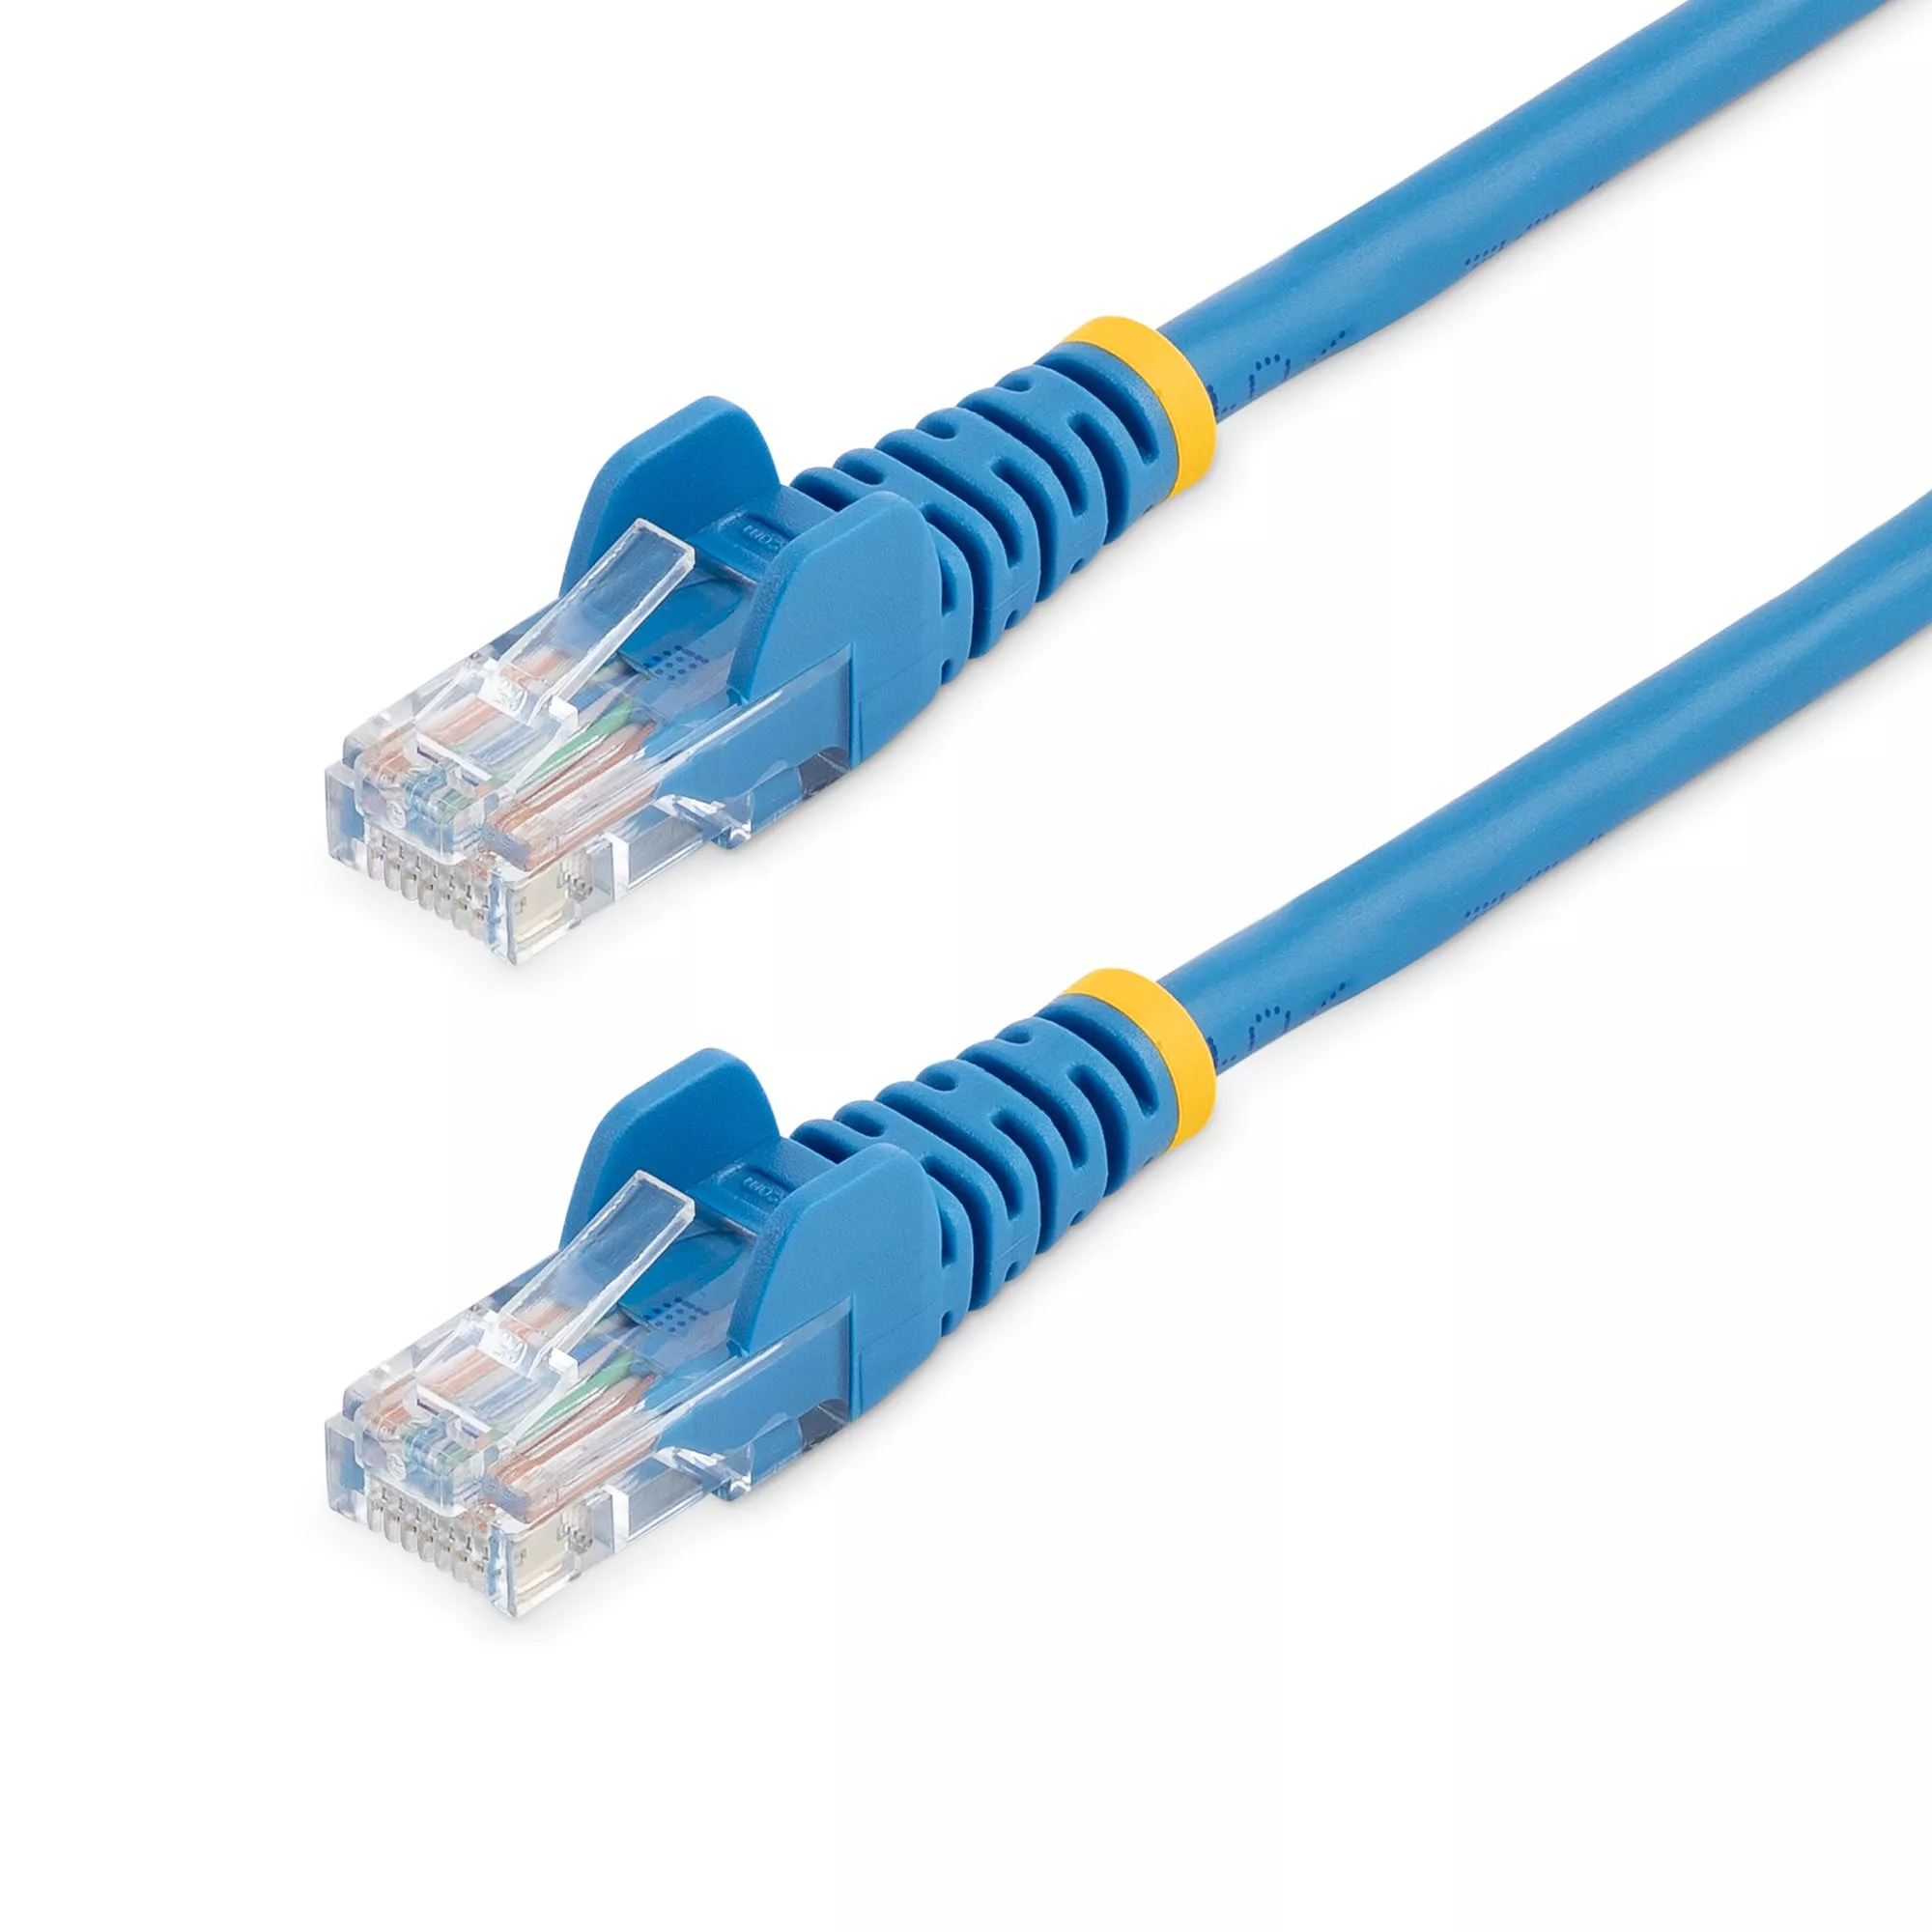 Vente StarTech.com Câble réseau Cat5e UTP sans crochet de 1m au meilleur prix